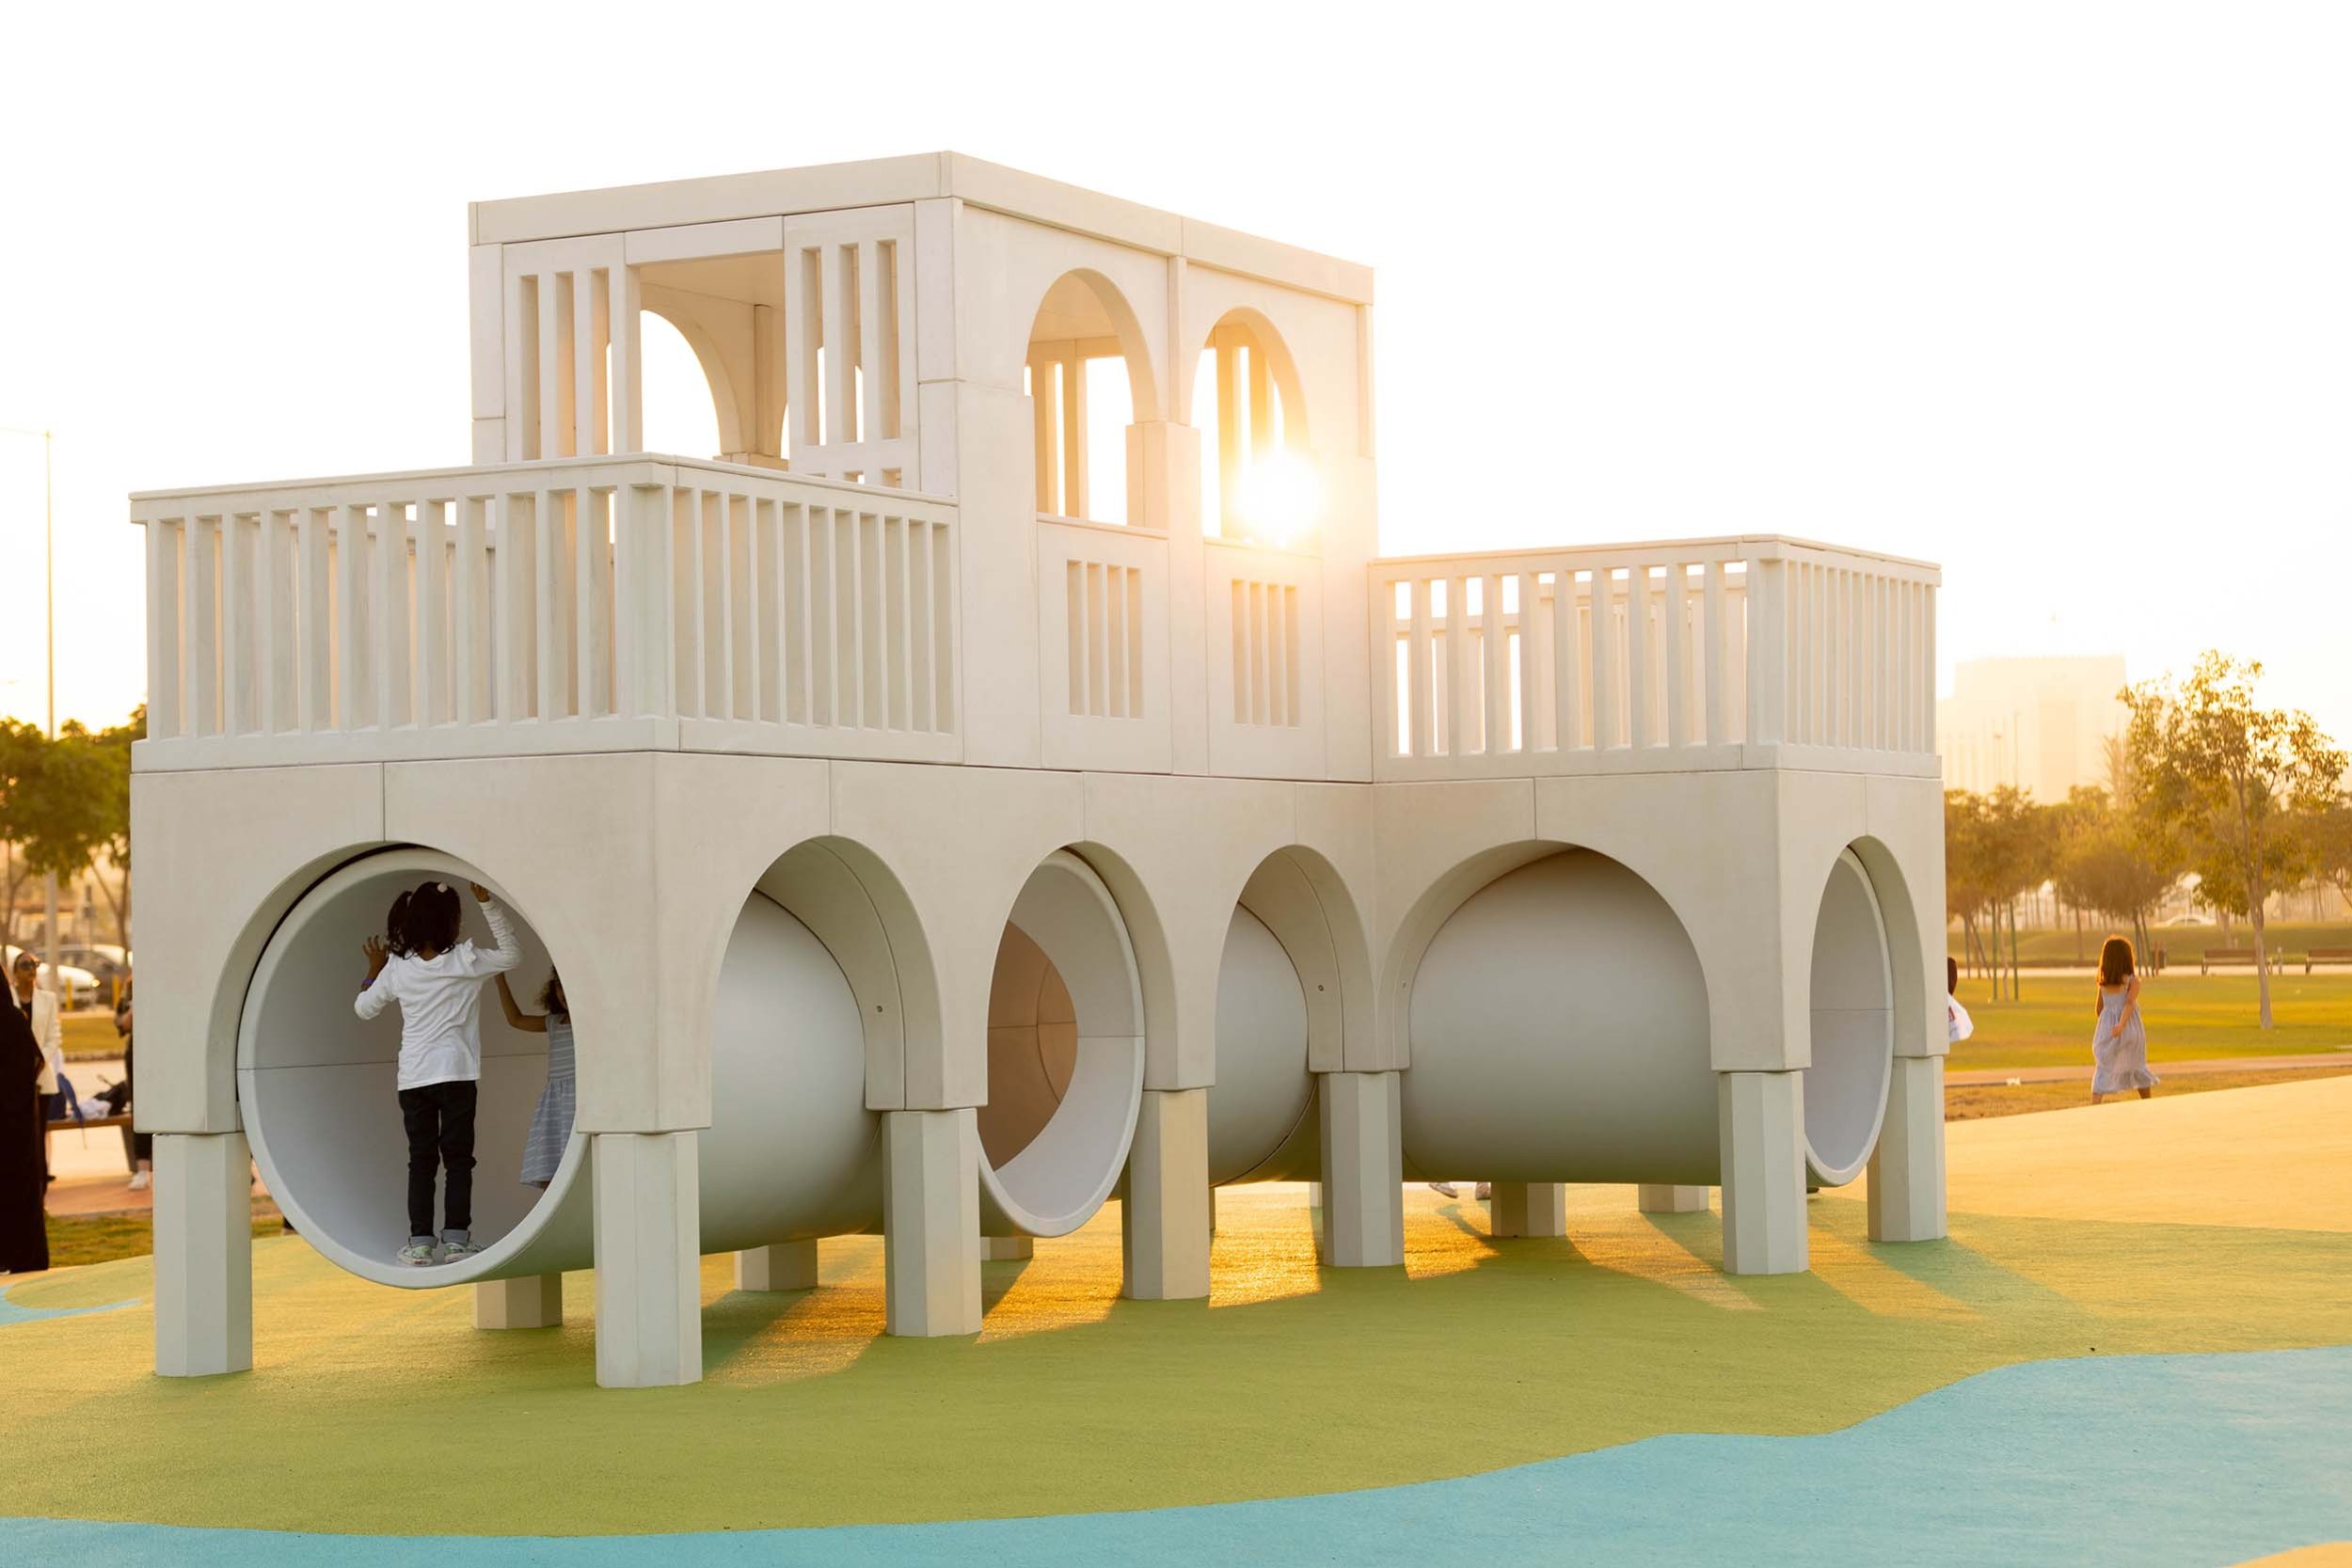 Детская площадка как напоминание о независимости: в столице Катара  поставили игровой комплекс, отсылающий к модернистским постройкам  1970-1980-х